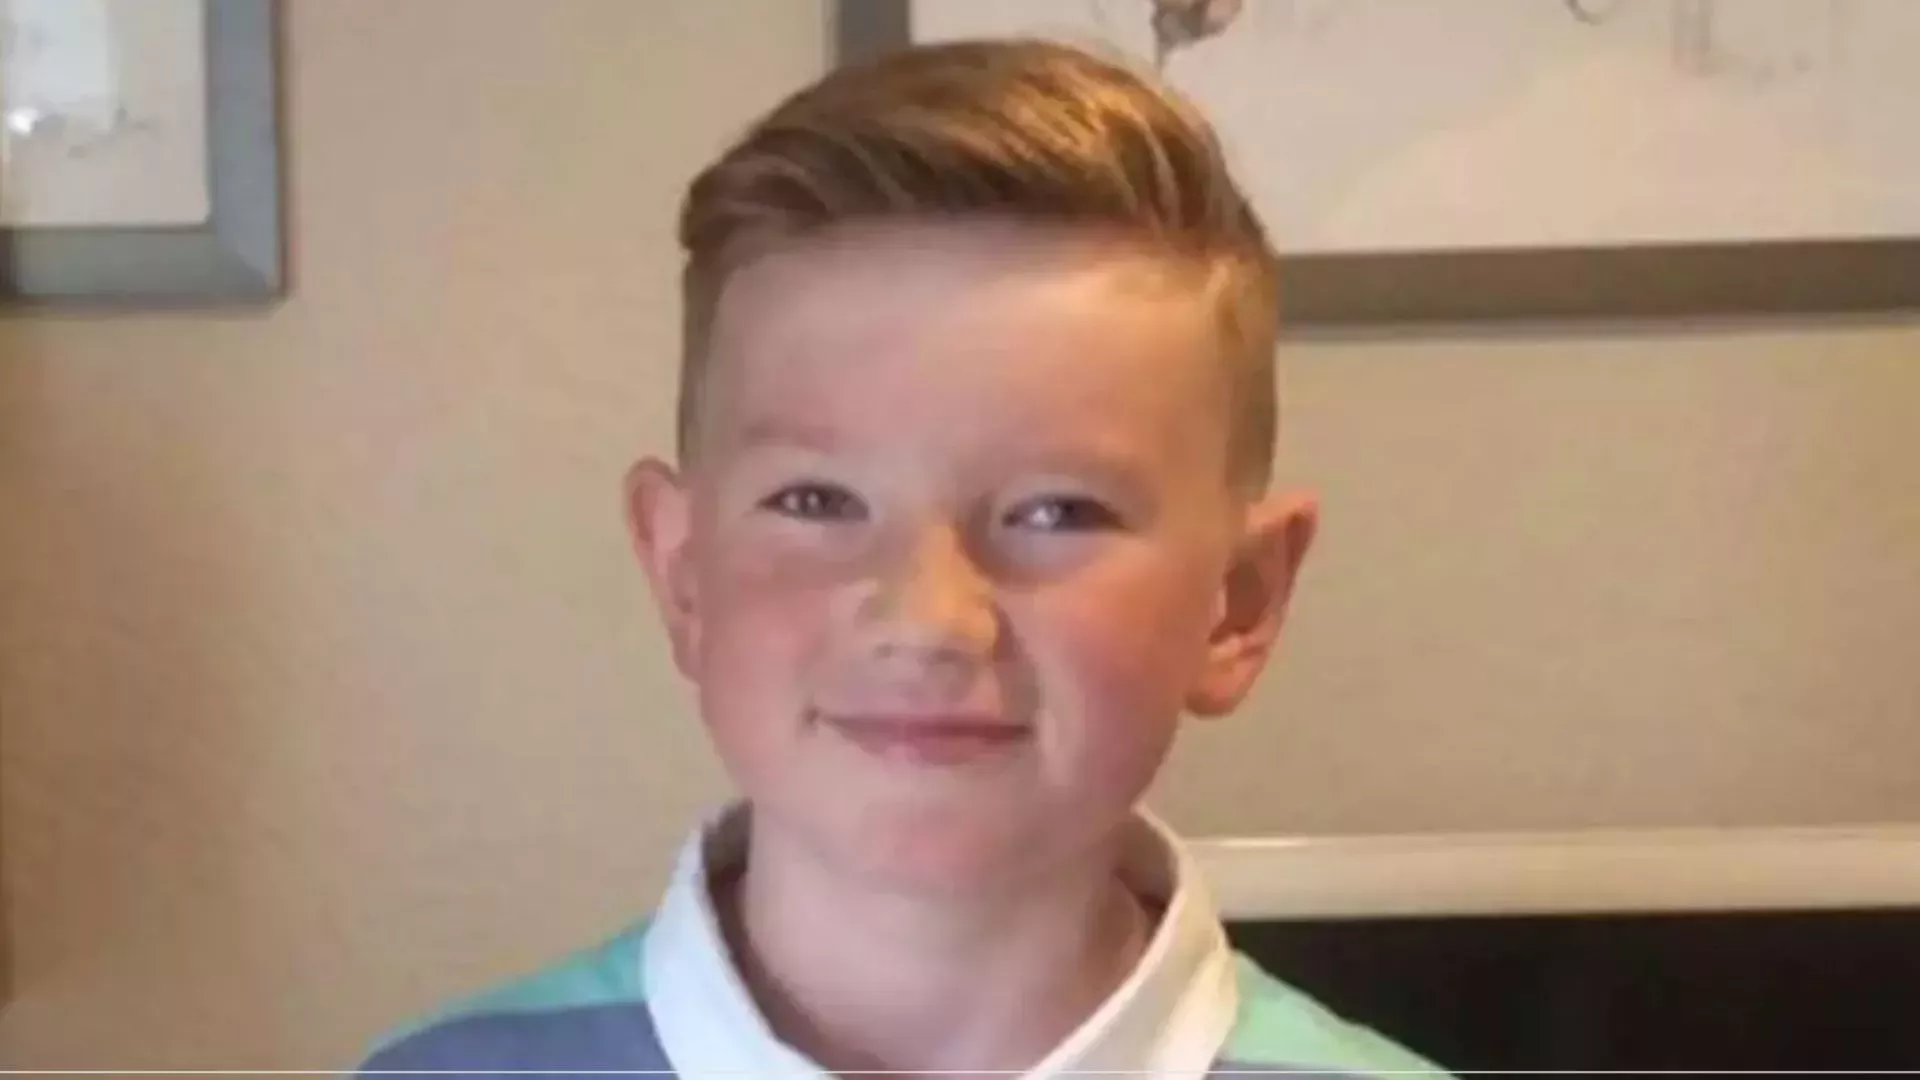 Alex Batty, el niño británico desaparecido hace 6 años, revela por qué huyó de su madre - Nacional | Globalnews.ca